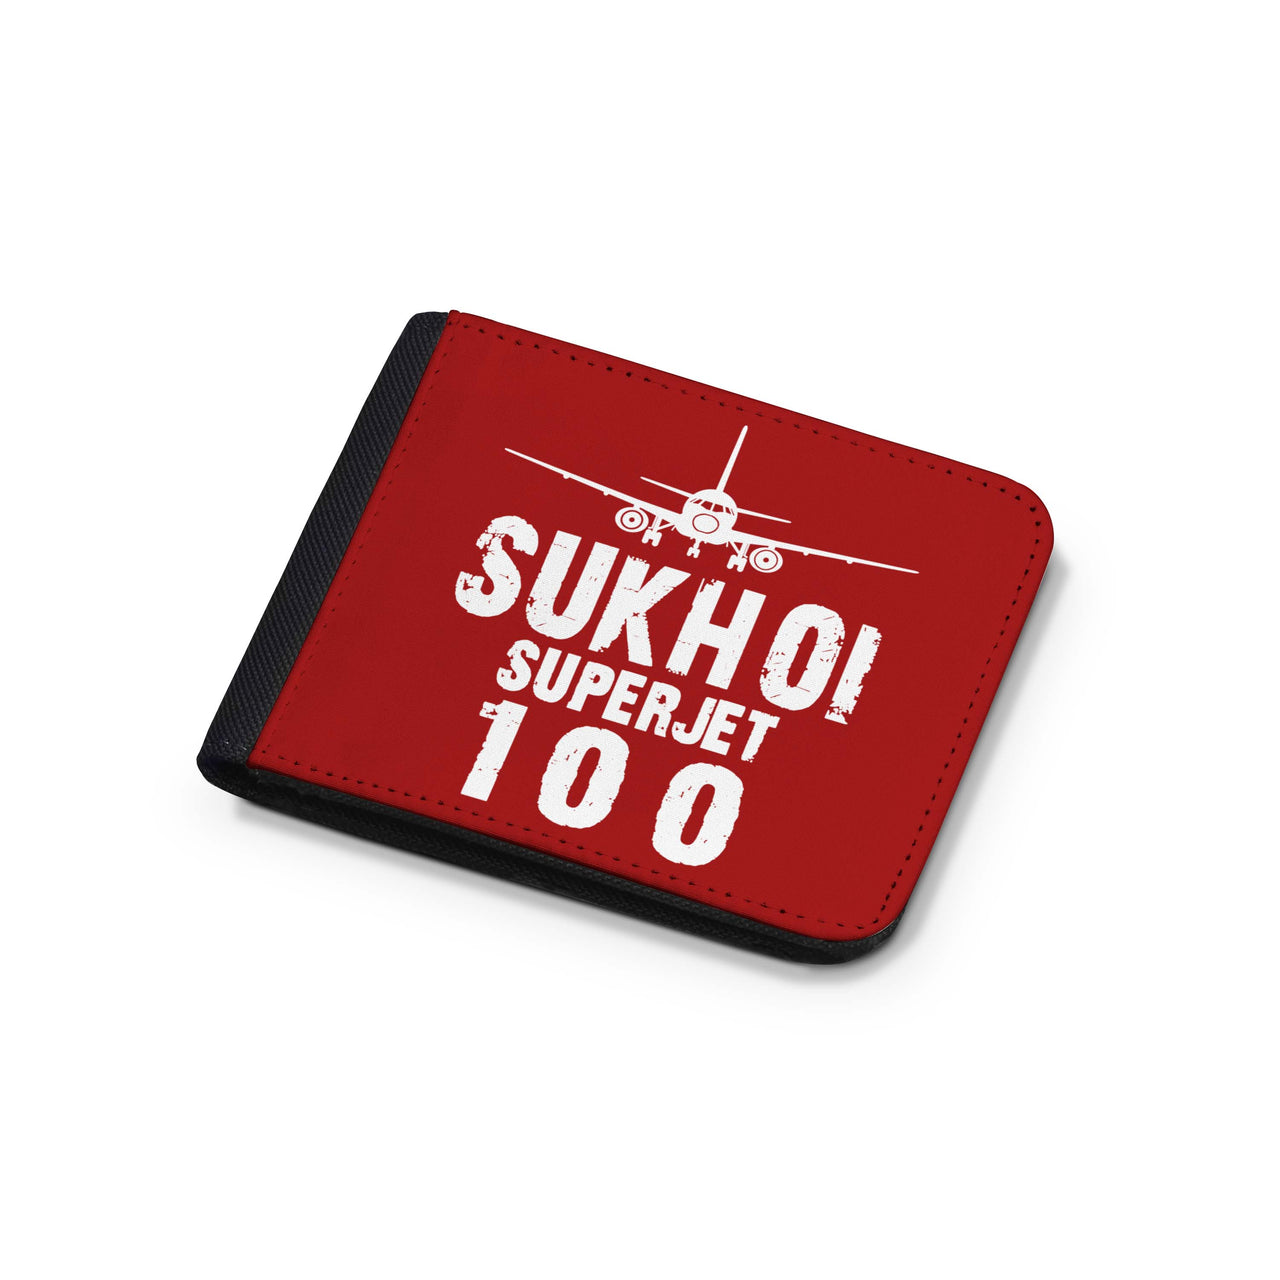 Sukhoi Superjet 100 & Plane Designed Wallets